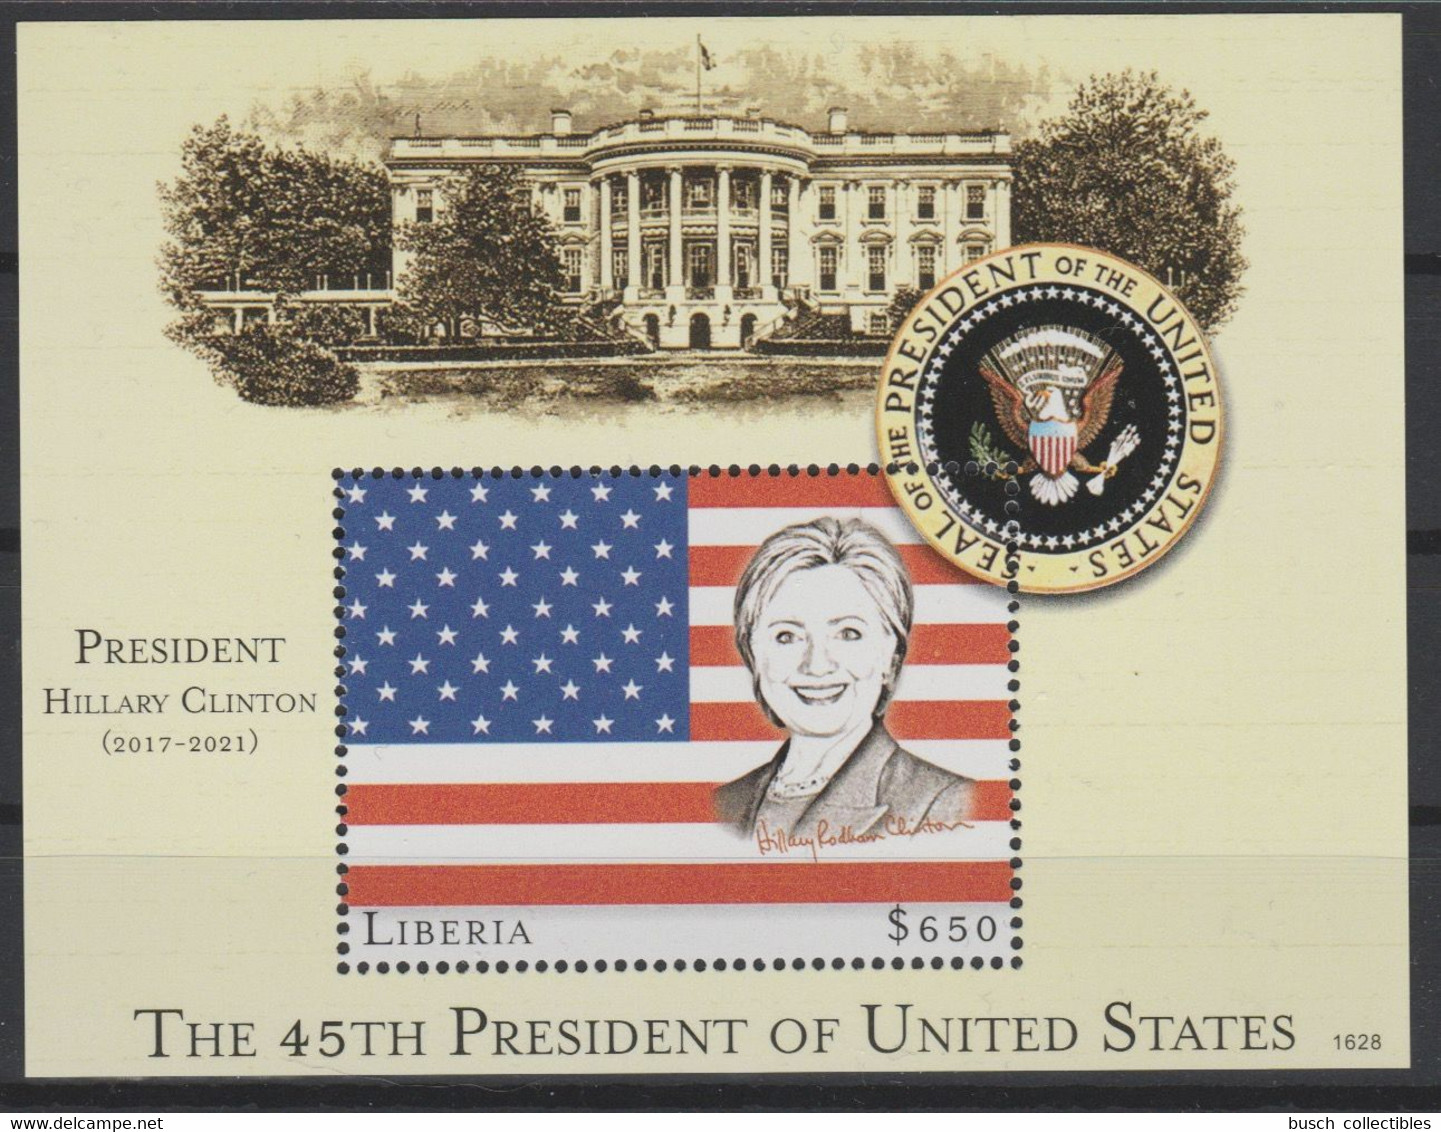 Liberia 2016 Mi. Bl. 754 UNISSUED NON EMIS Hillary Clinton 45th President United States White House Flag Stars Stripes - Francobolli